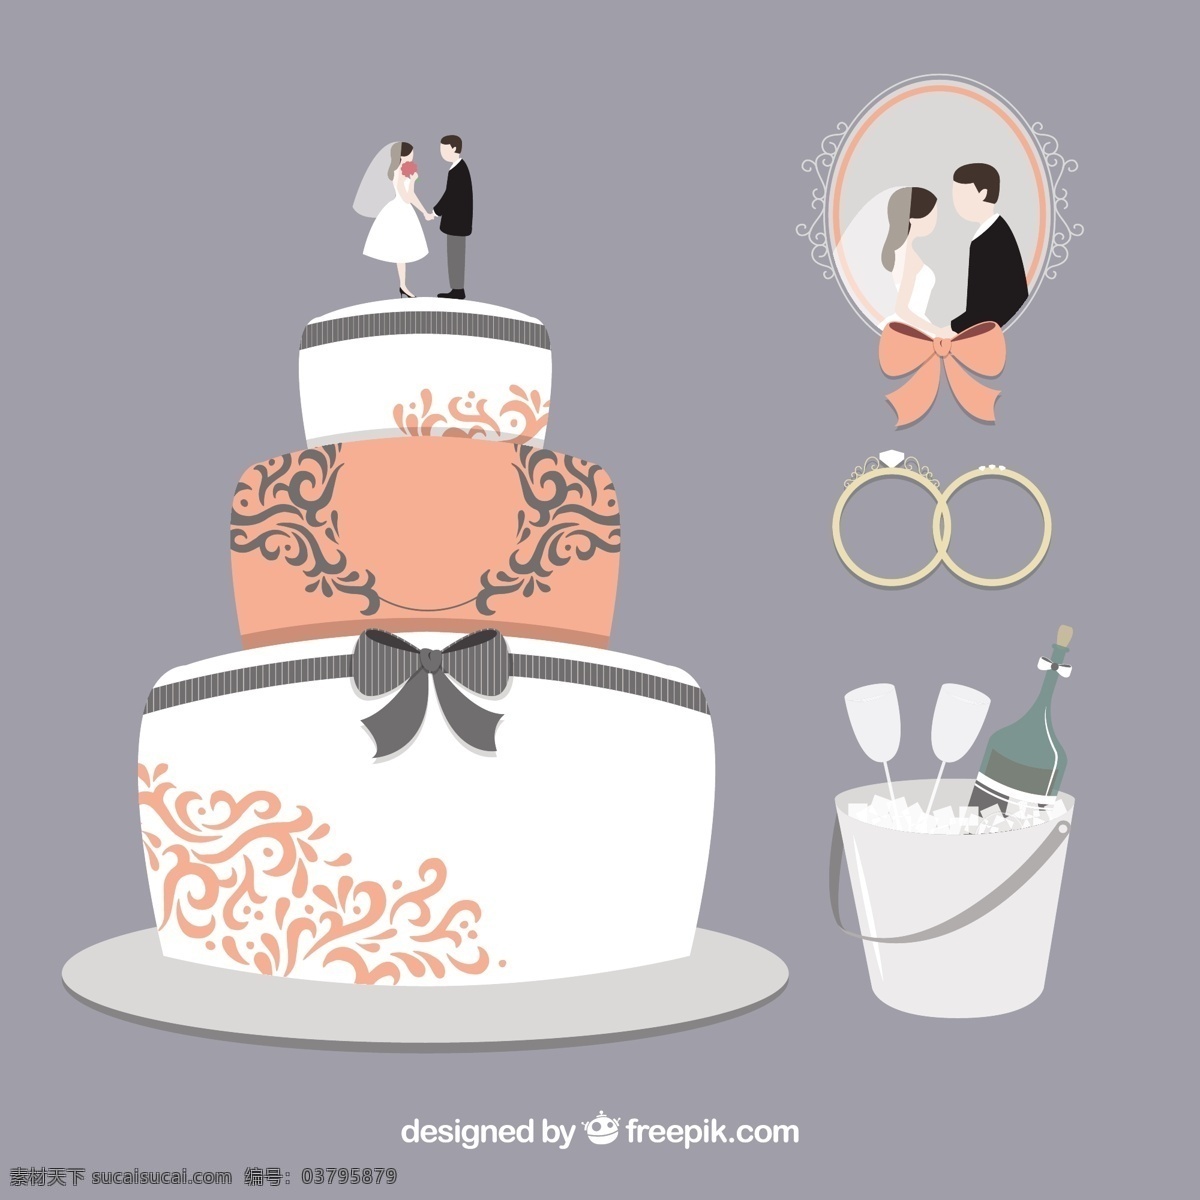 美味 婚礼 蛋糕 结婚 爱情 庆祝 饮料 香槟 甜 装饰 浪漫 订婚 结婚蛋糕 仪式 灰色